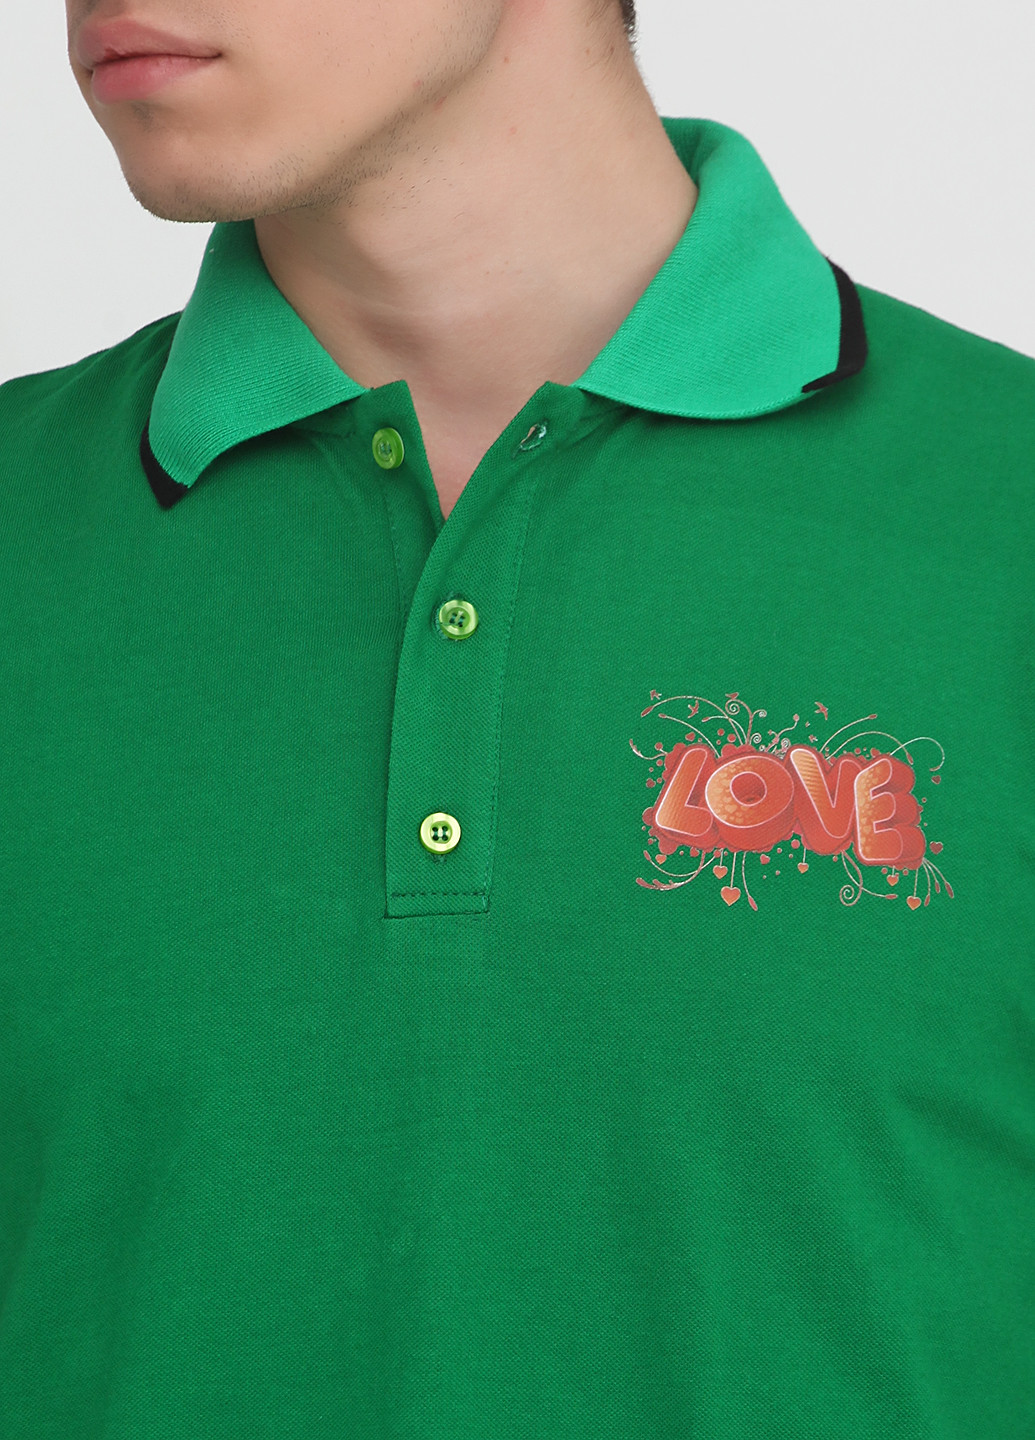 Зеленая футболка-поло для мужчин Tryapos с надписью